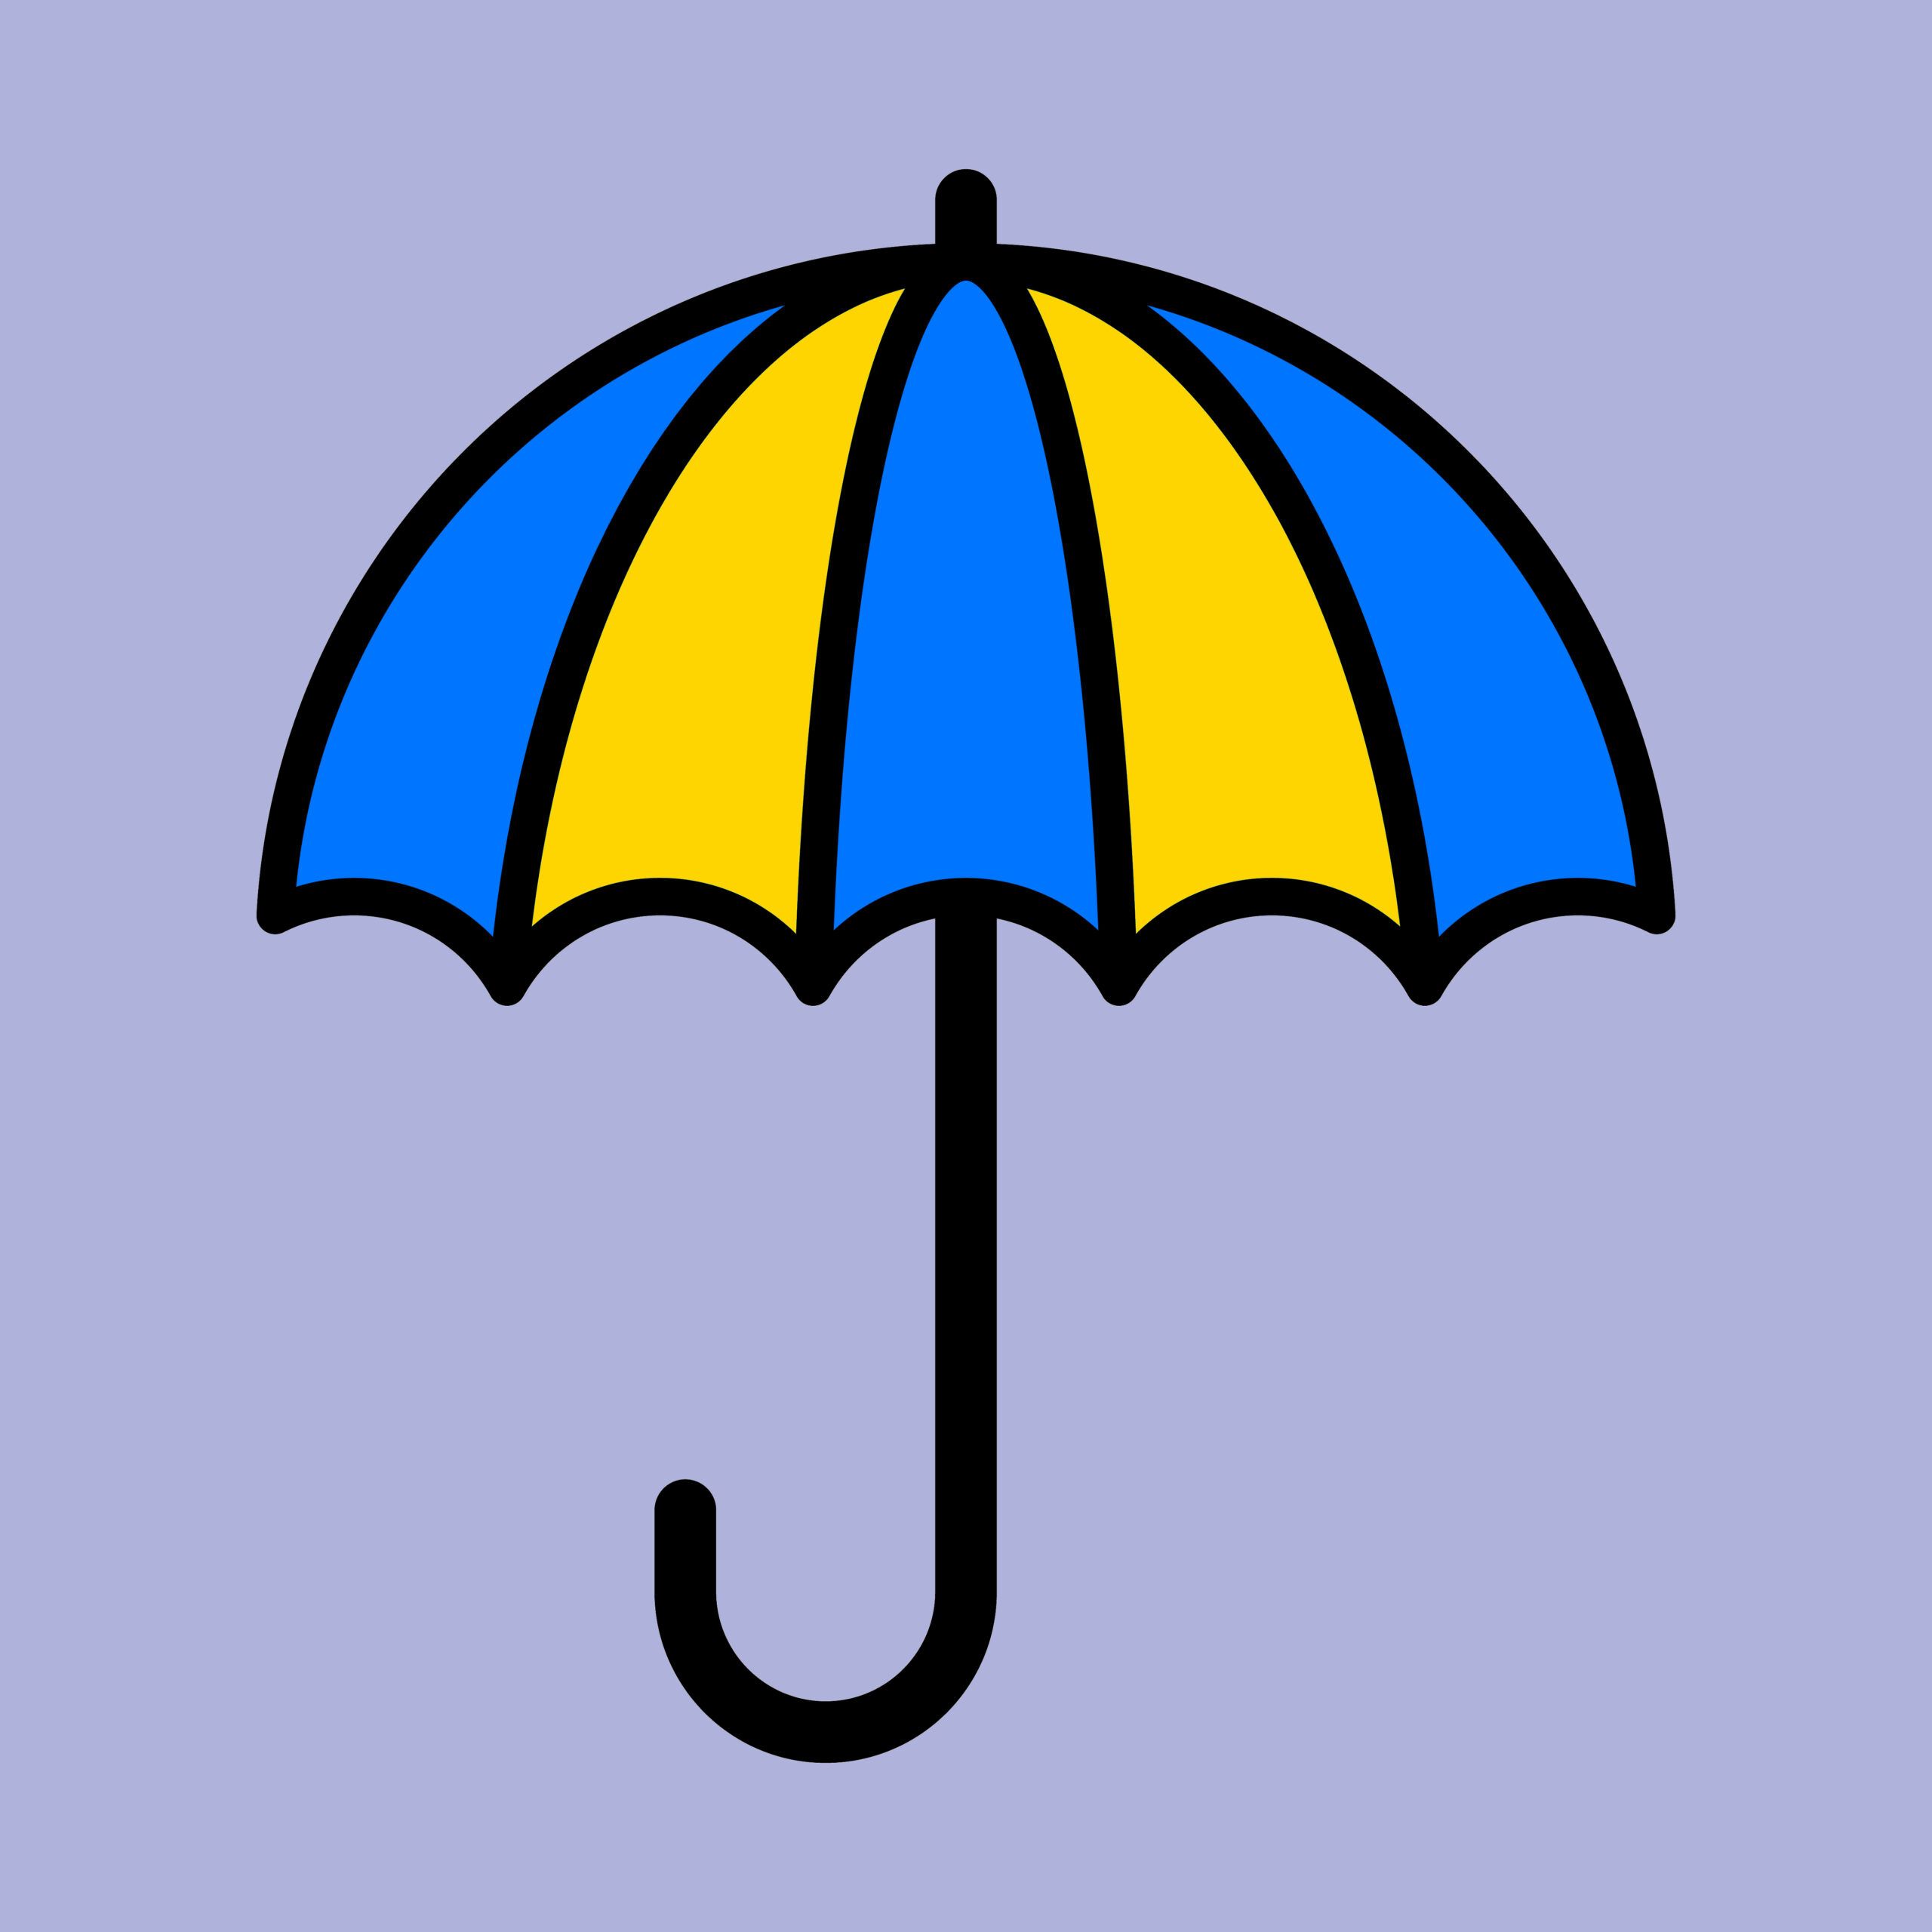 Bezpłatna pomoc psychologiczna dla osób z Ukrainy - ilustracja parasolki w barwach ukraińskiej flagi